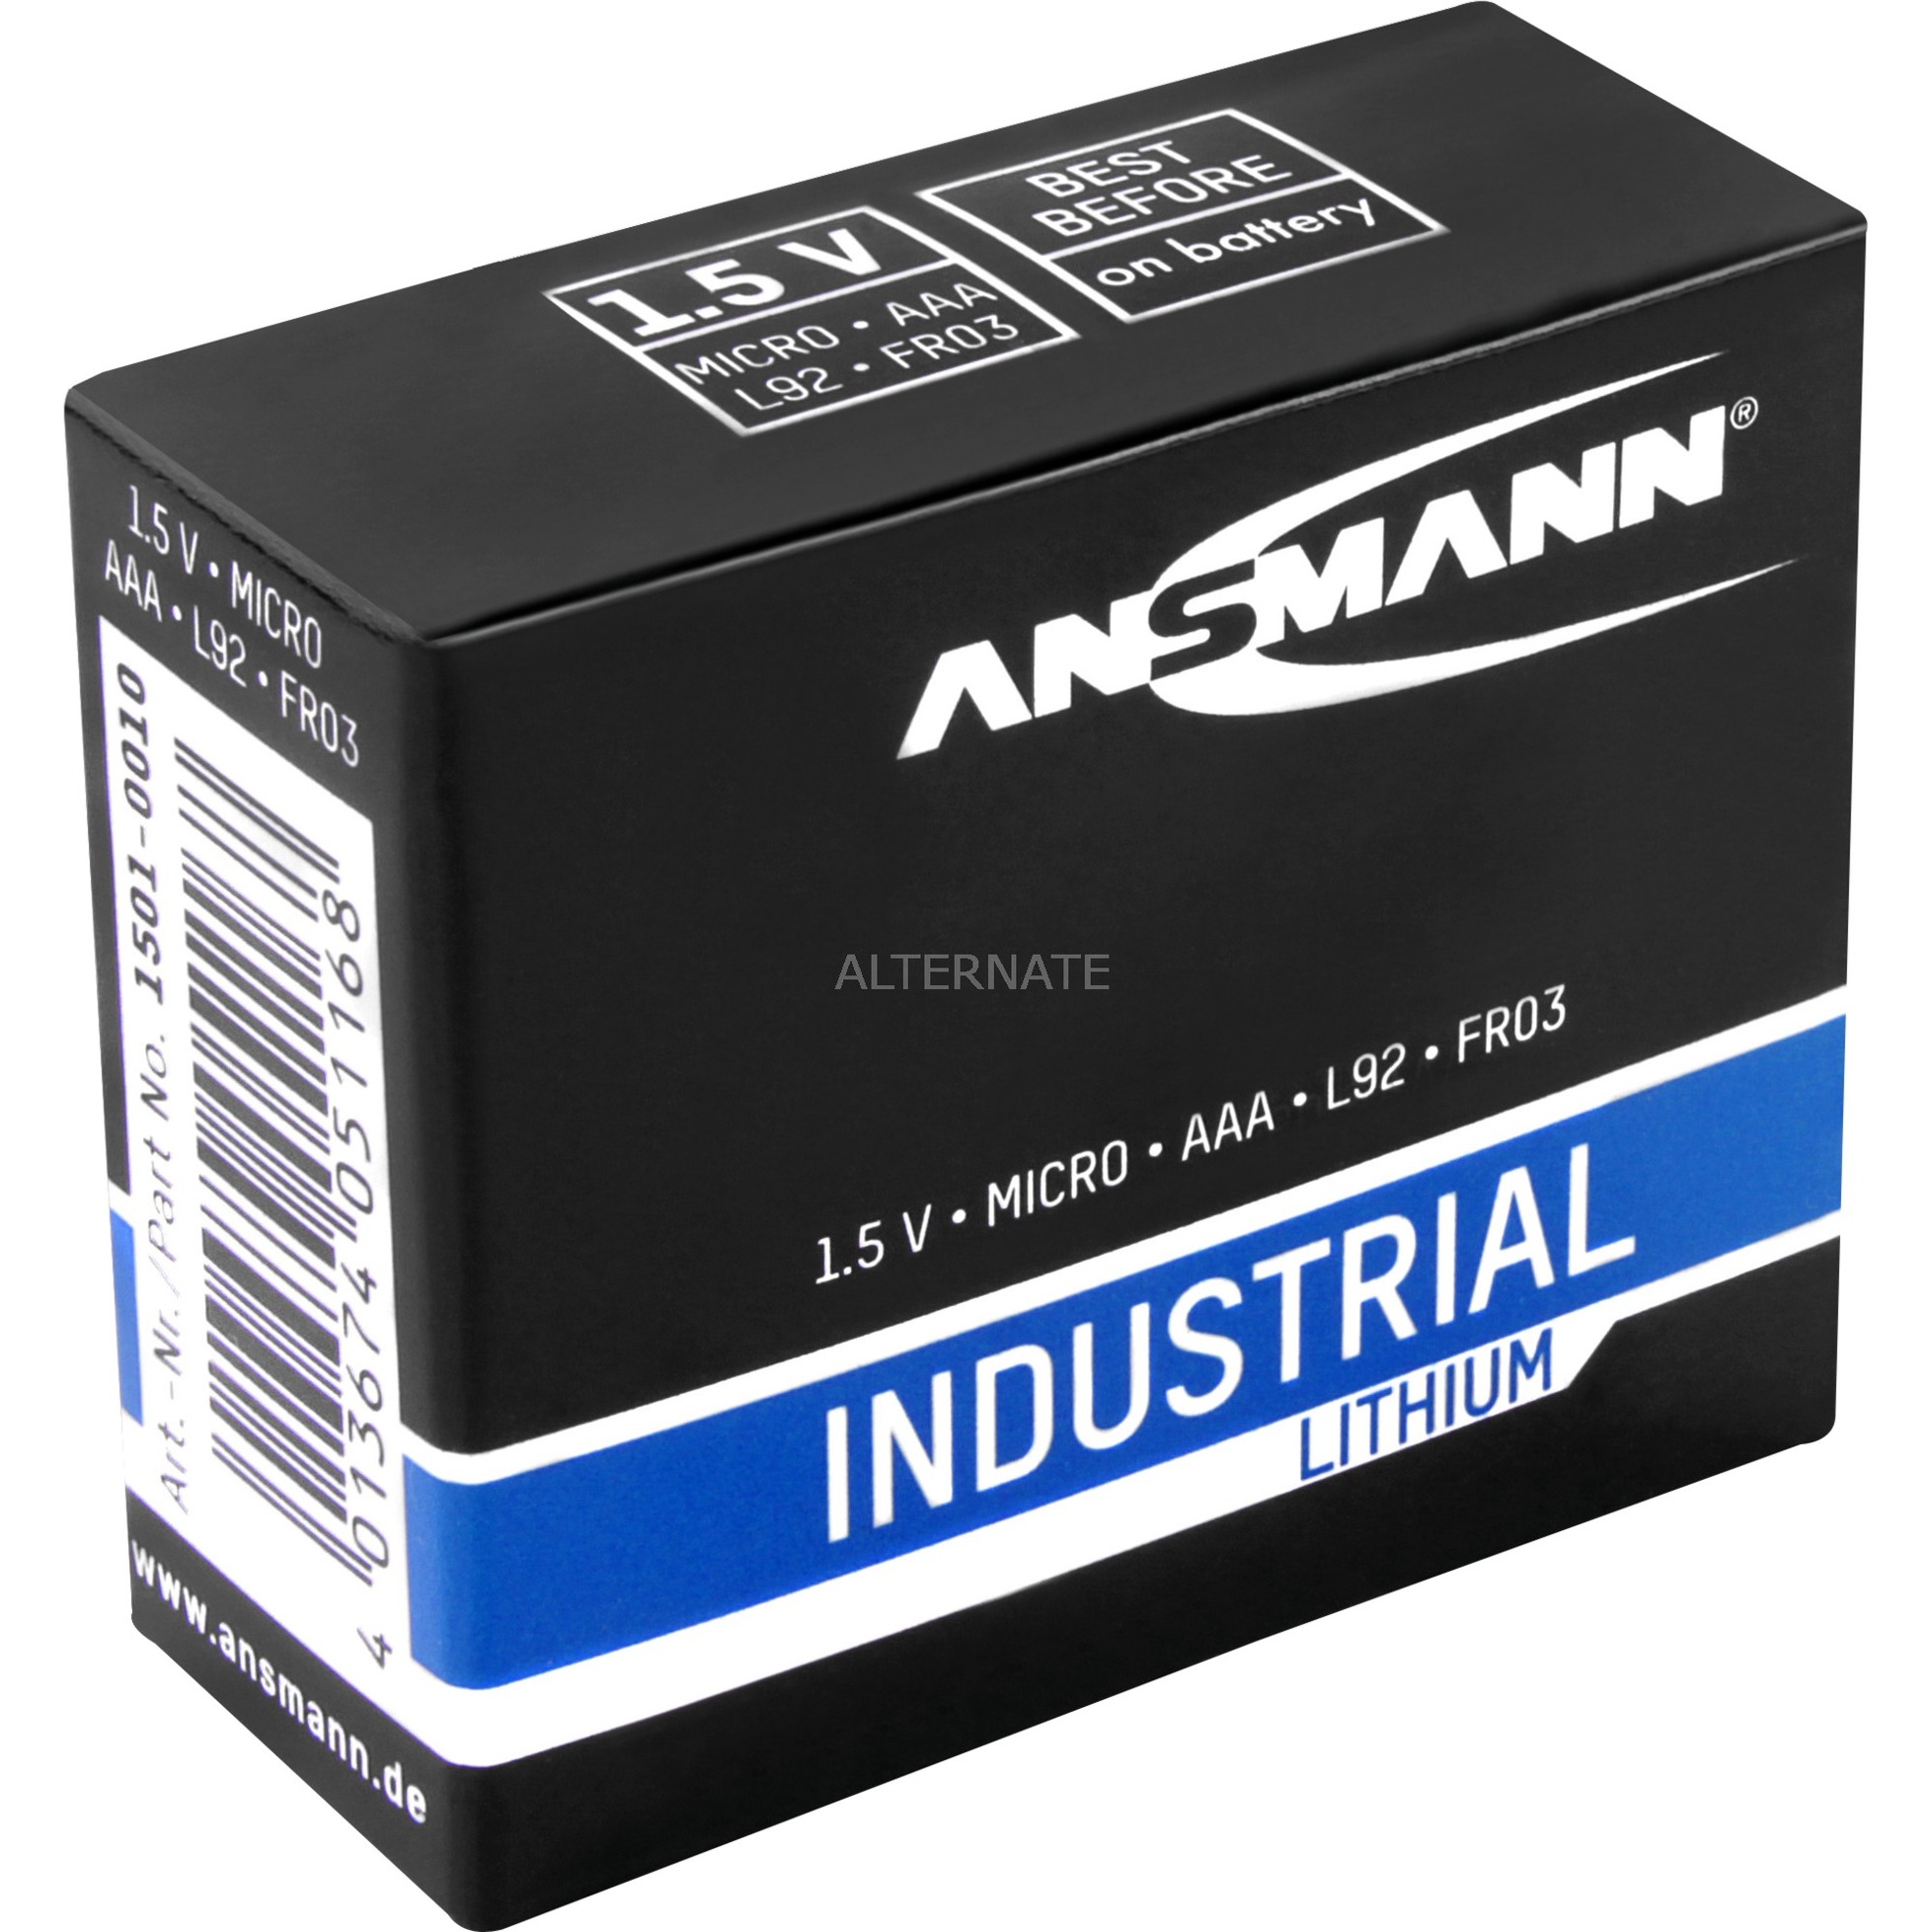 Image of Alternate - Lithium Batterie AAA / FR03 online einkaufen bei Alternate